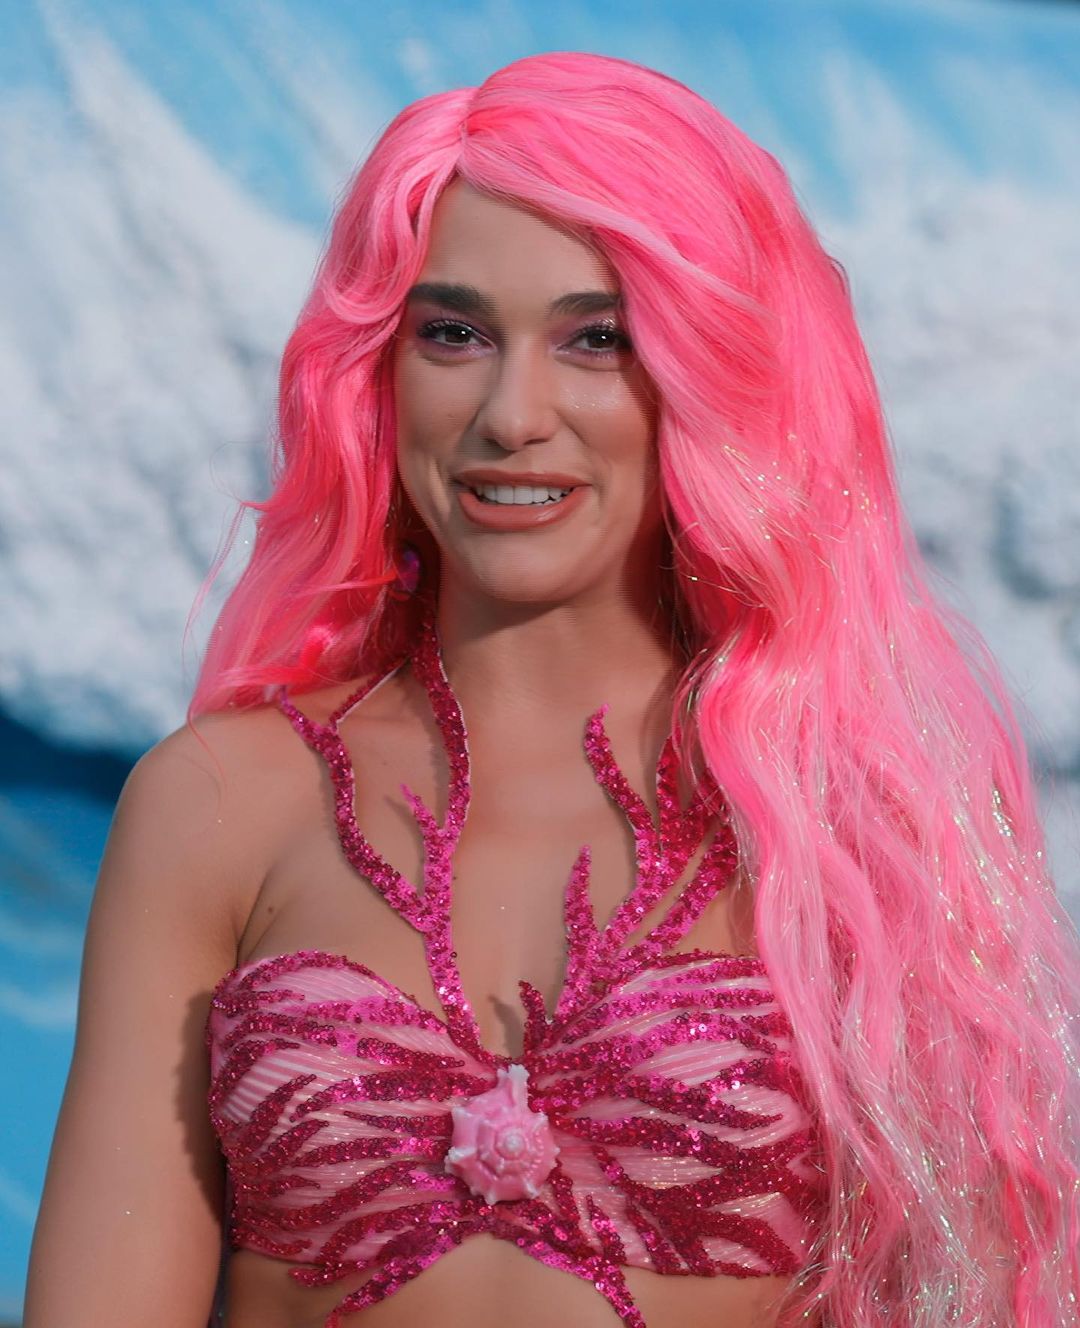 Photos n°1 : Dua Lipa is Mermaid Barbie!